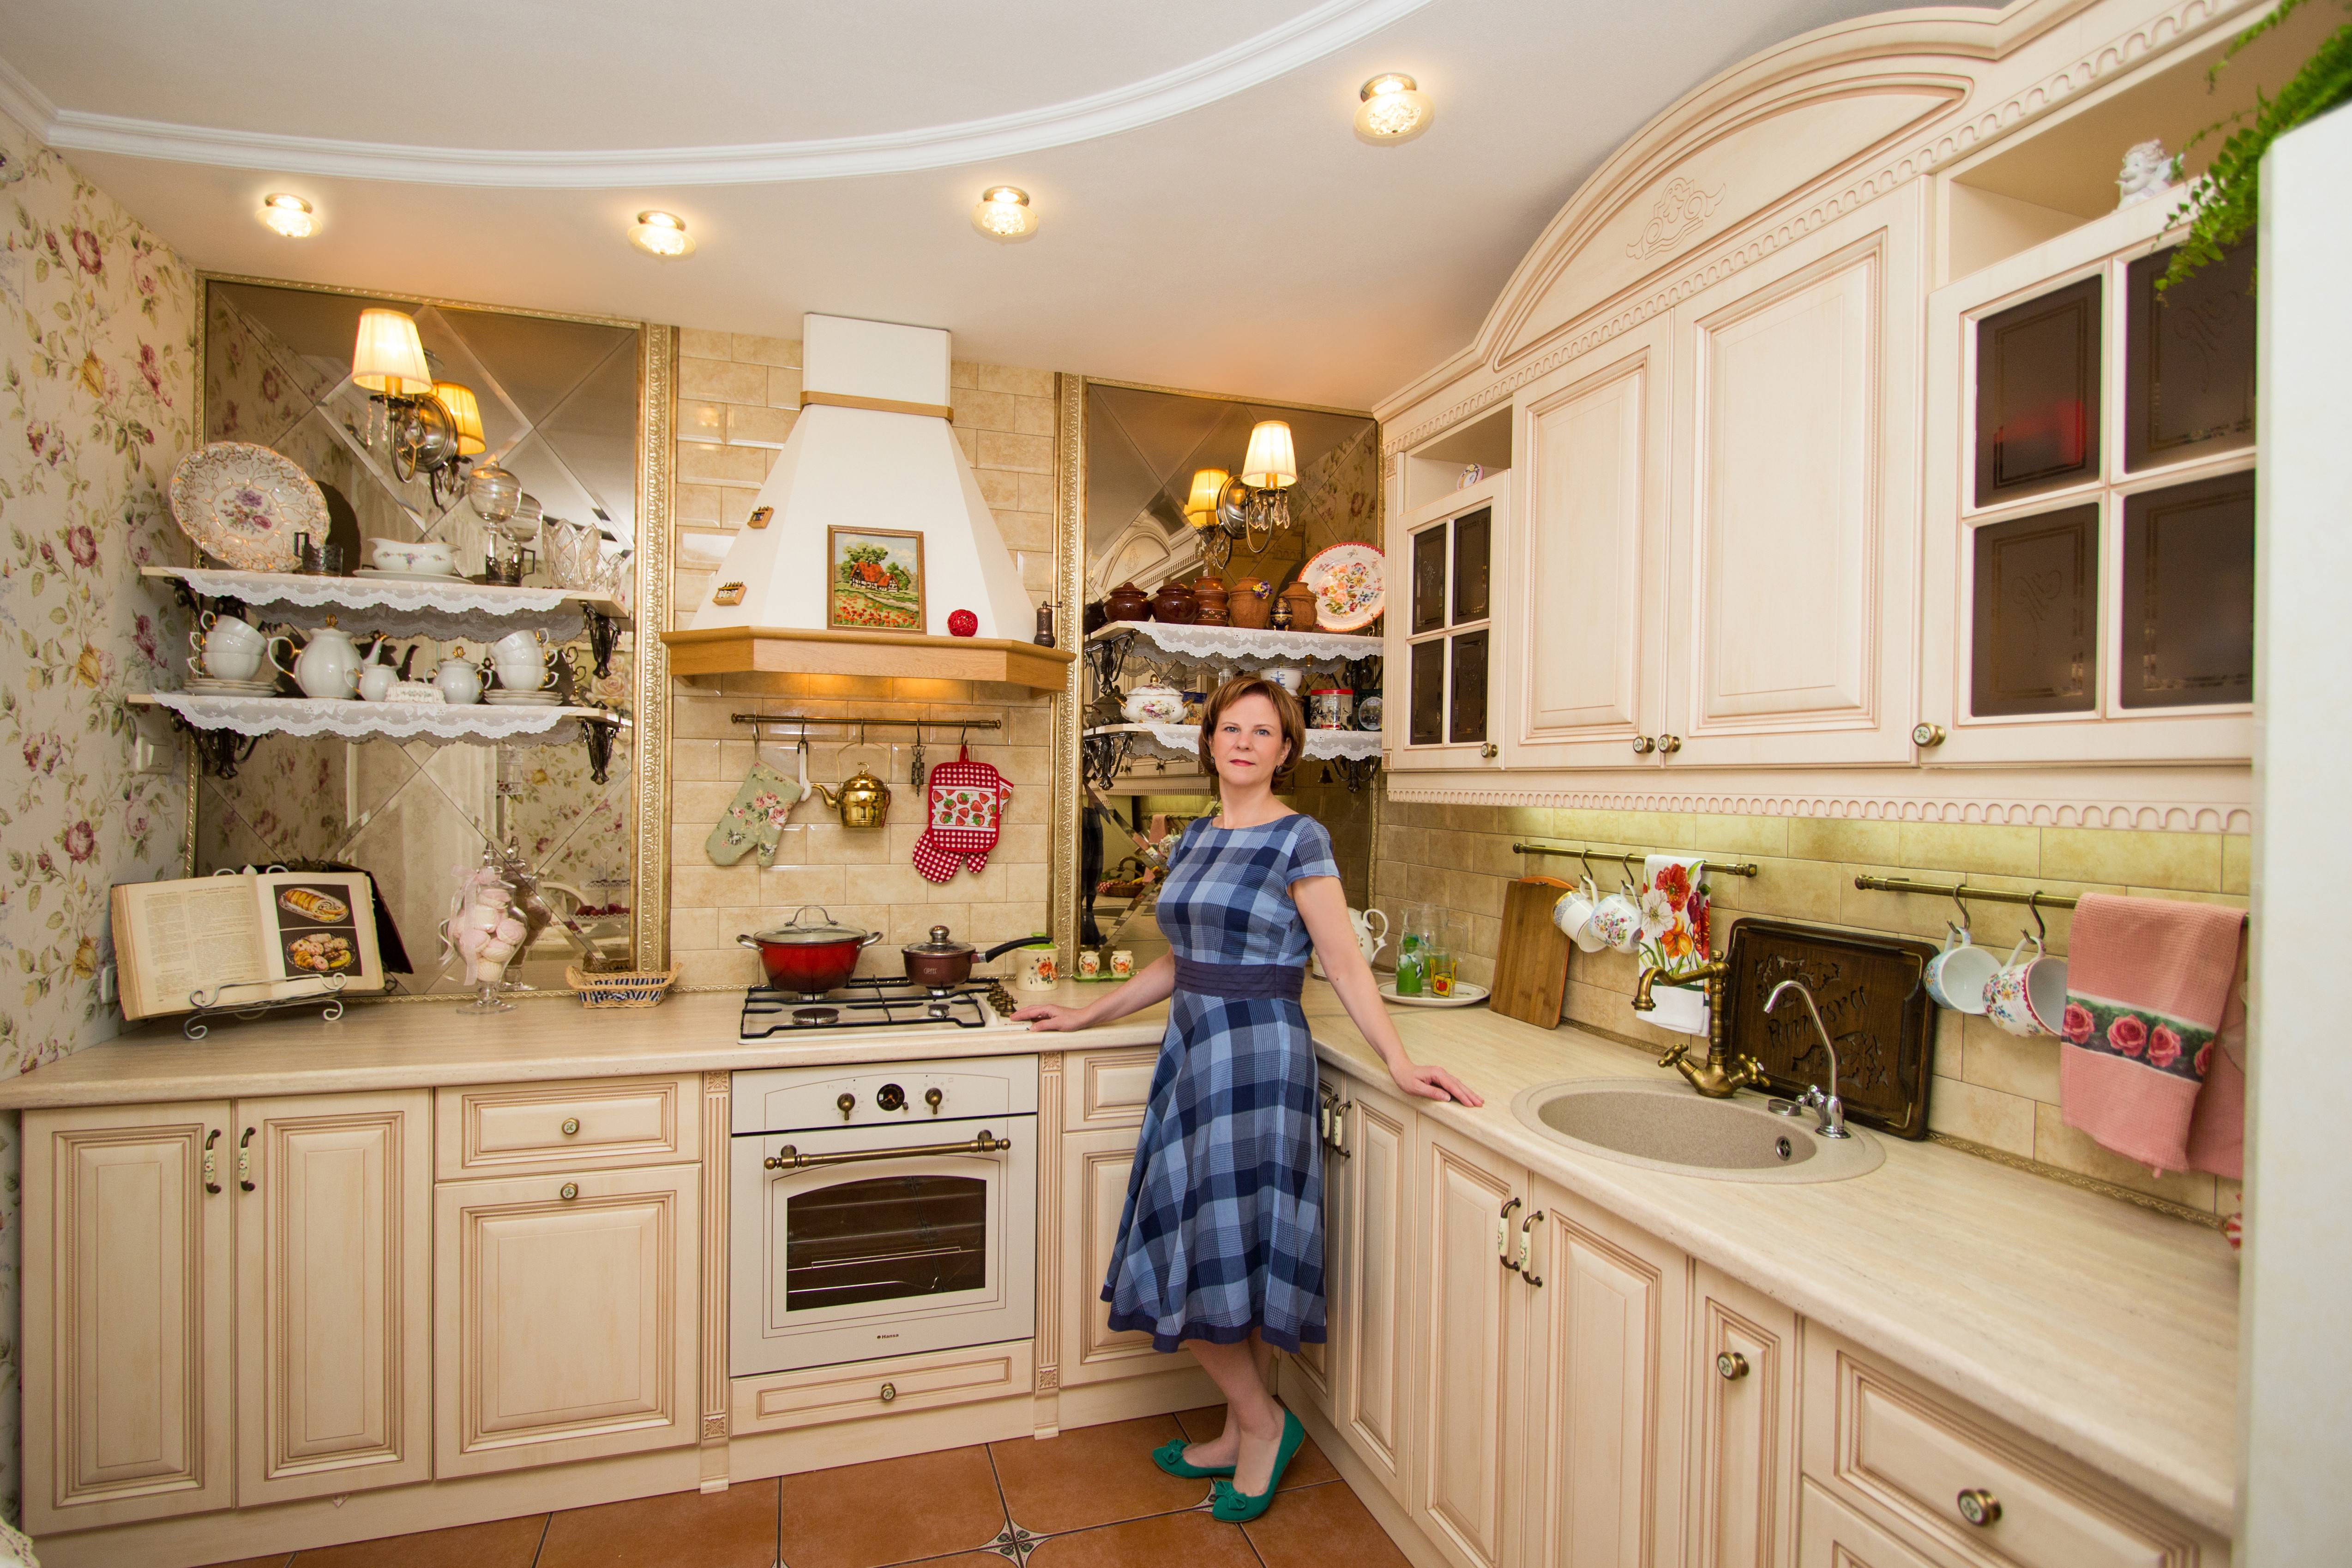 Семья беловых решила сделать ремонт на кухне. Кухня у Юлии Высоцкой в стиле Прованс. Уютный интерьер кухни. Красивая уютная кухня. Уютный кухонный гарнитур.